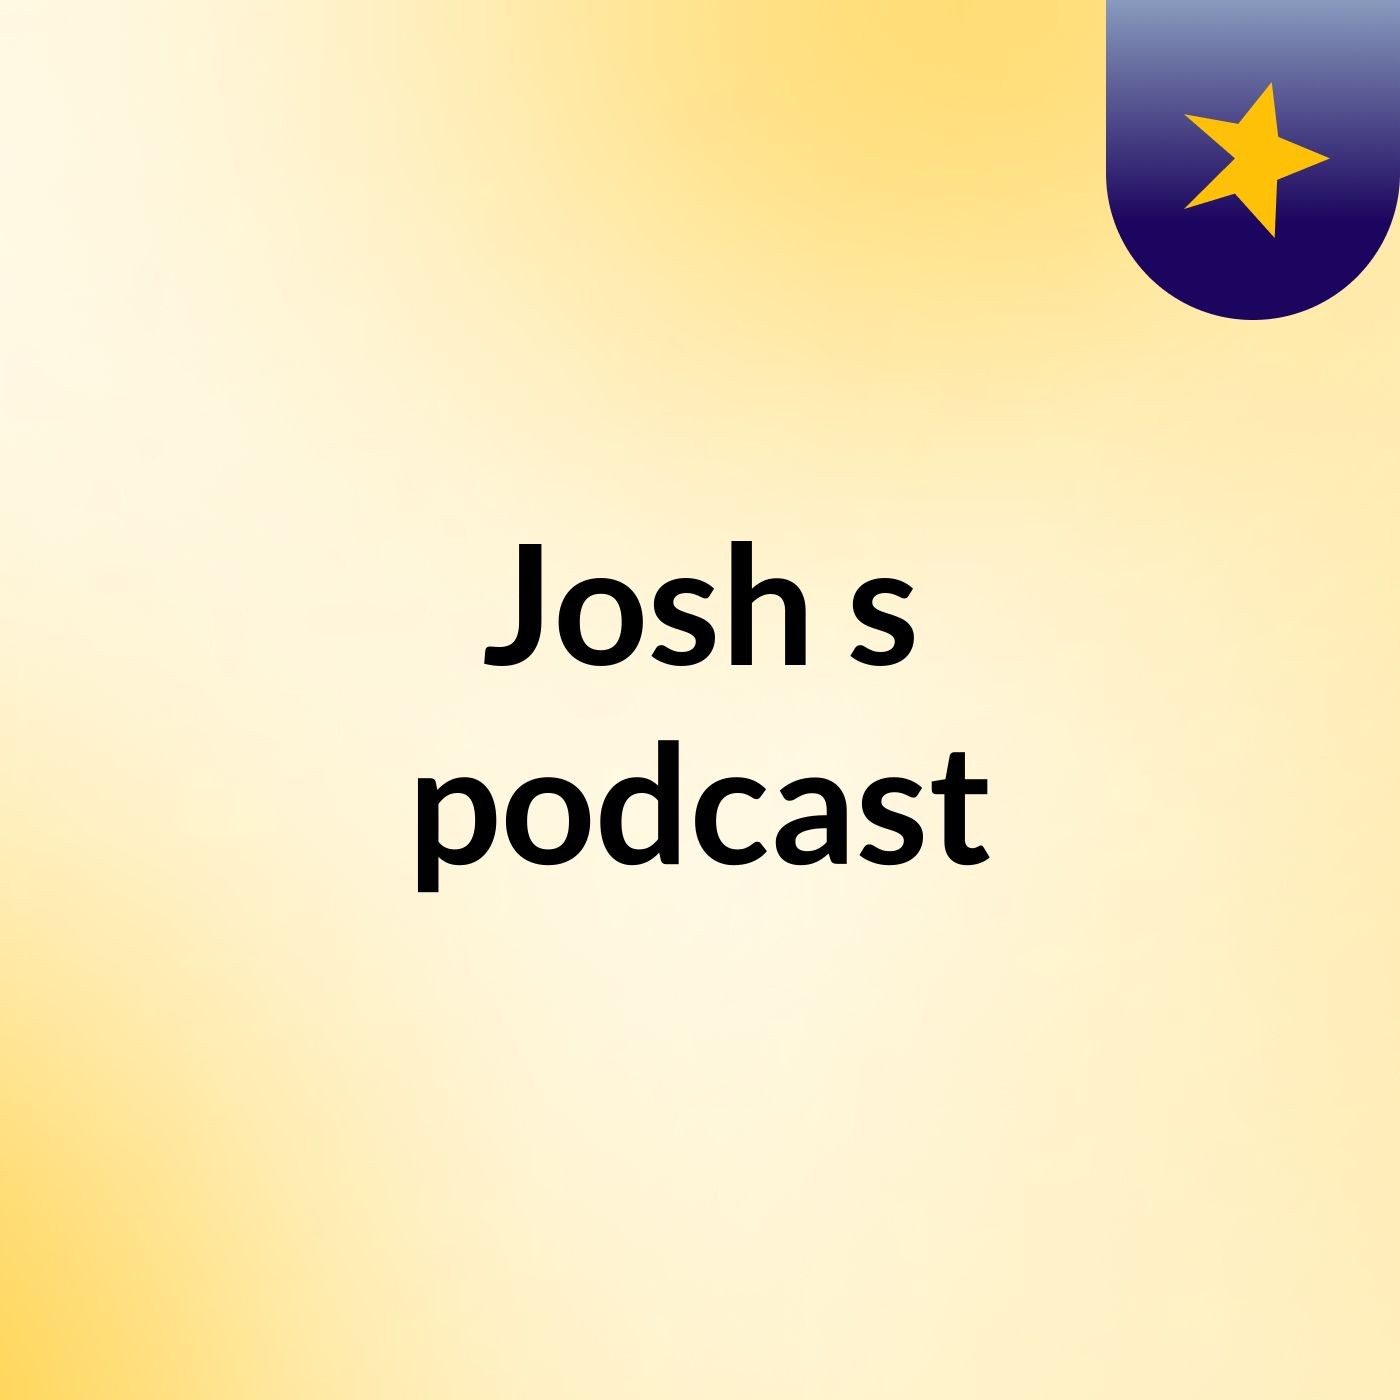 Josh's podcast